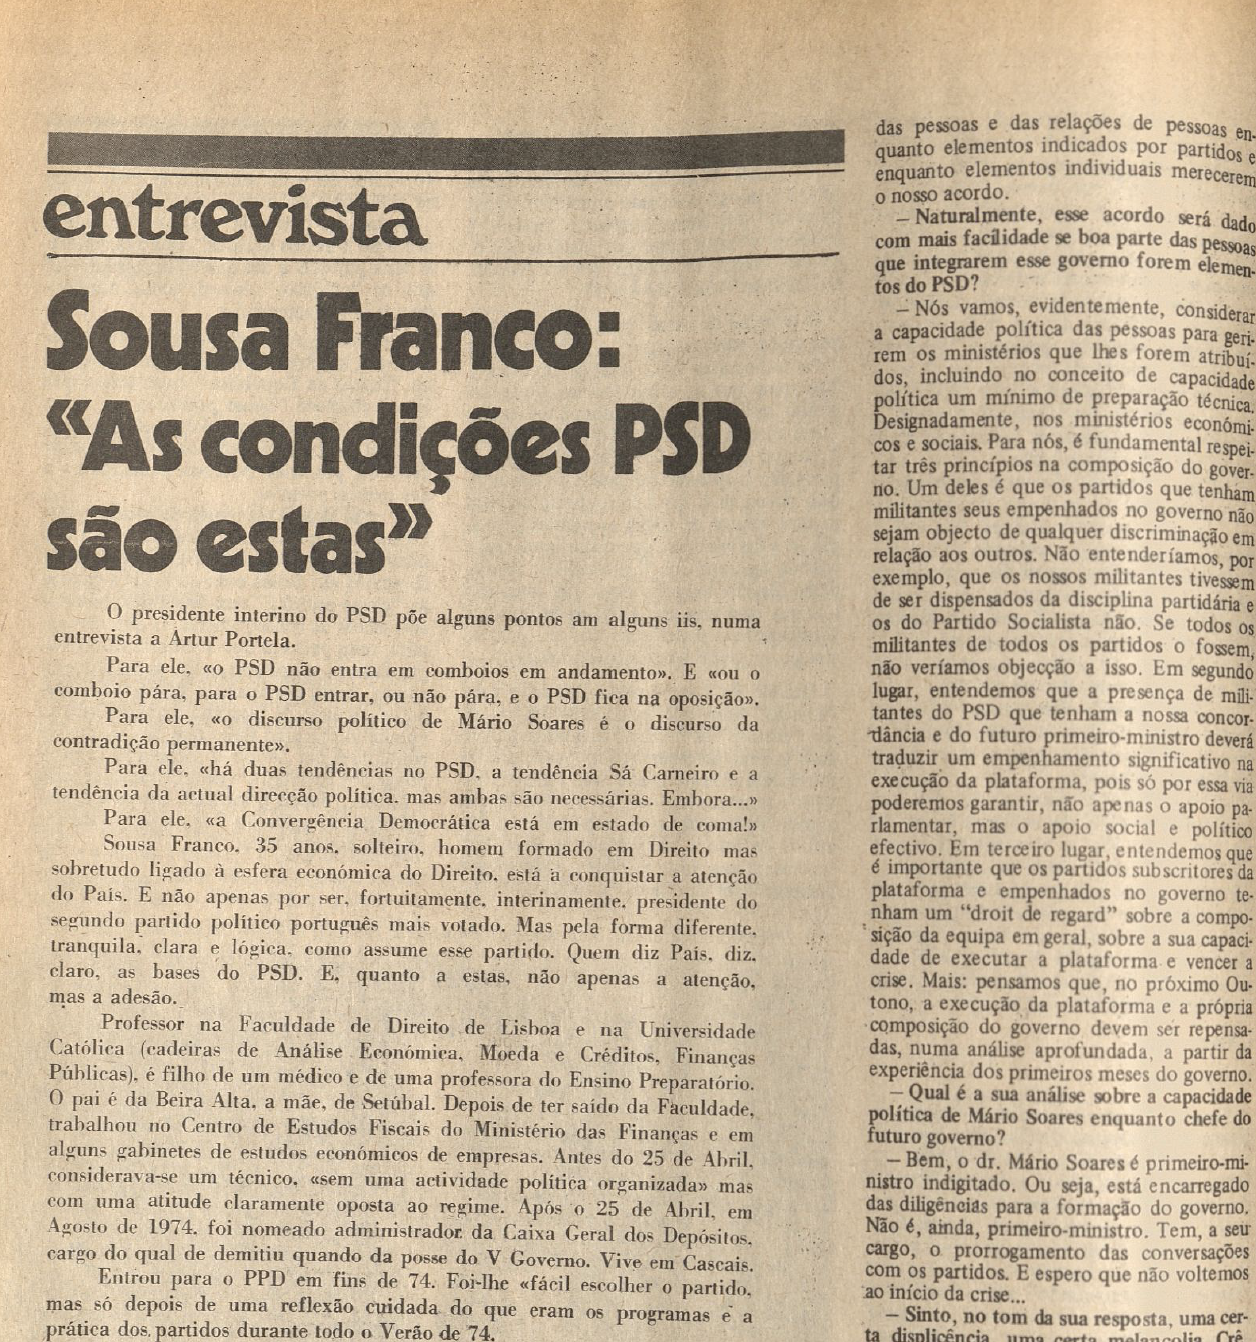 "Sousa Franco As condições no PSD são estas"